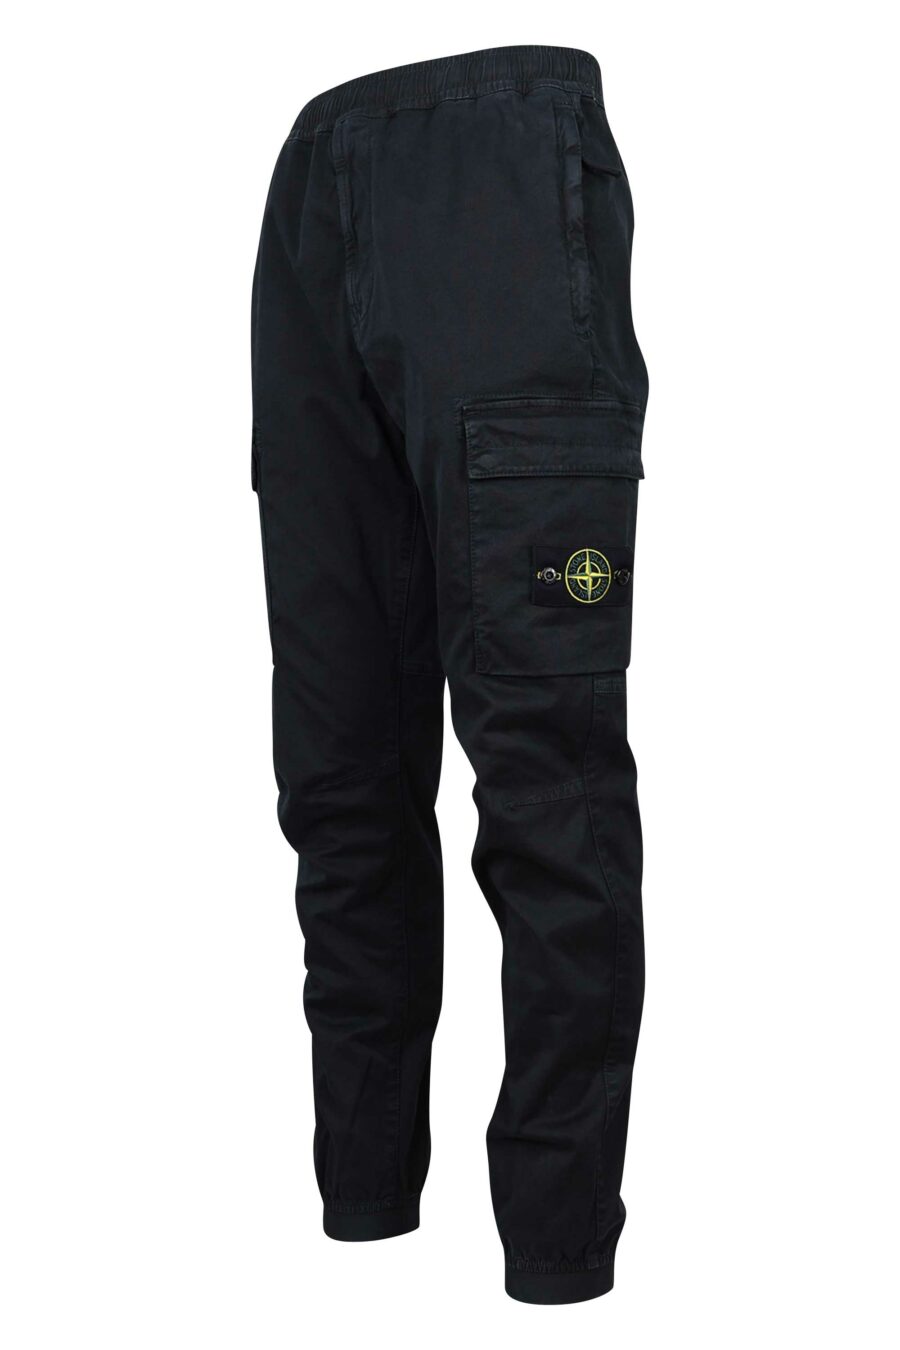 Pantalon noir avec patch logo sur le côté - 8052572723292 1